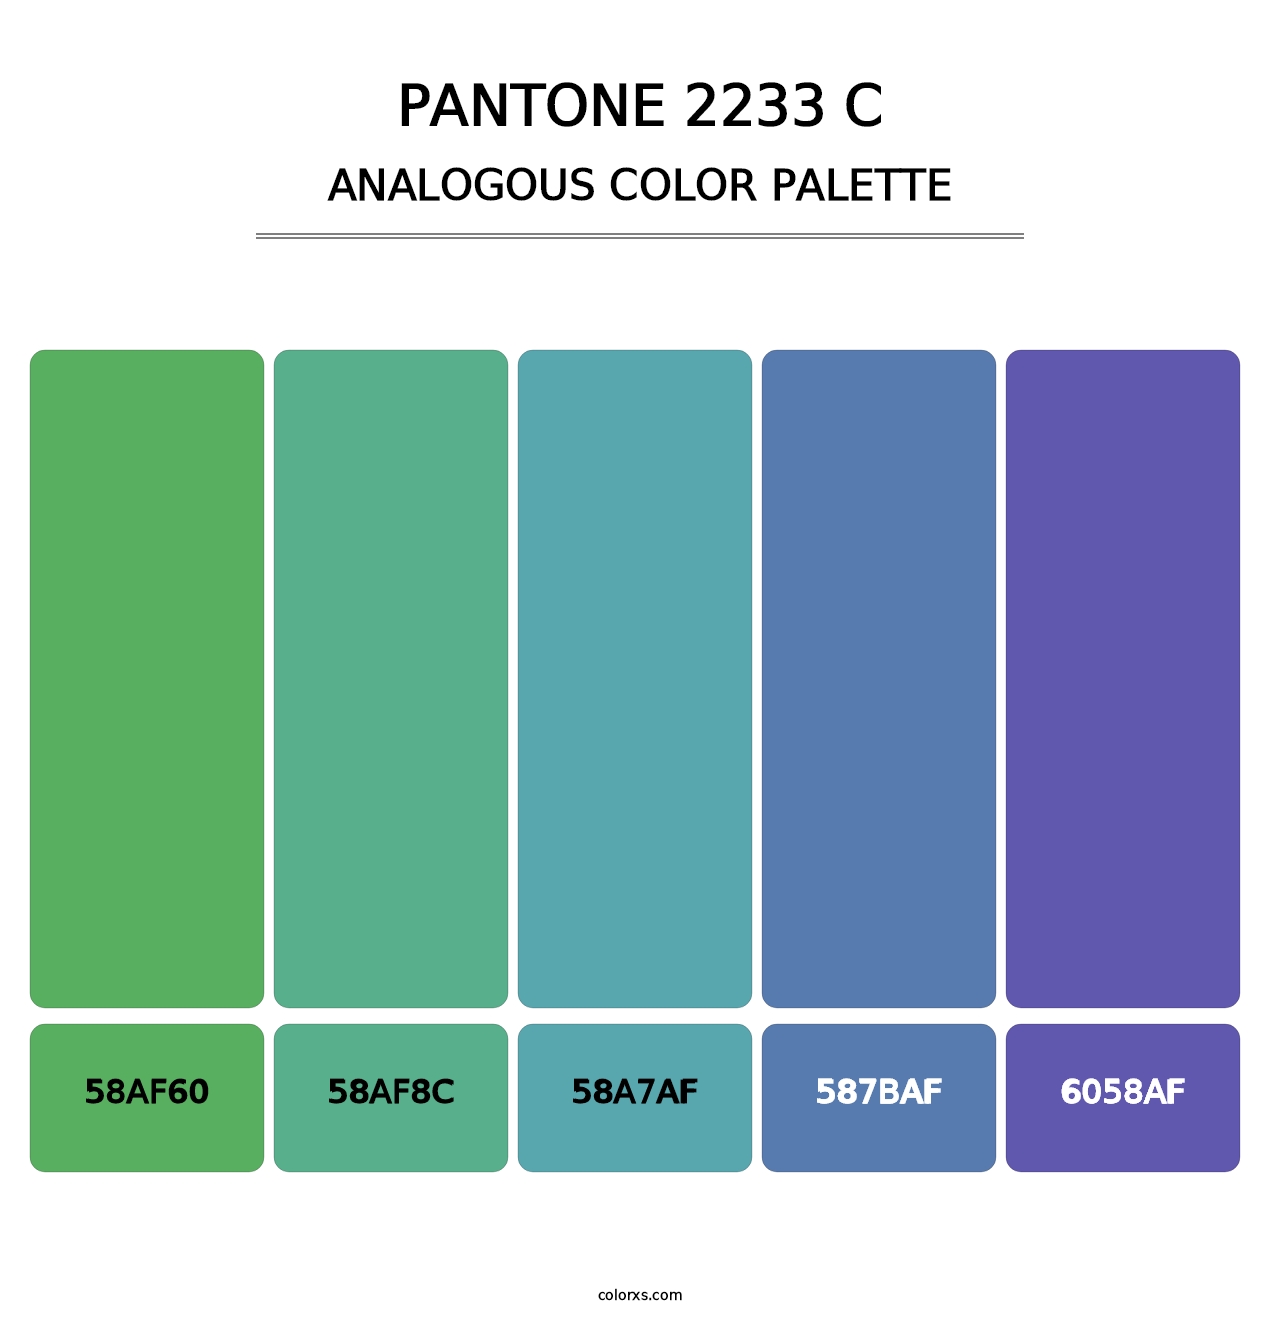 PANTONE 2233 C - Analogous Color Palette